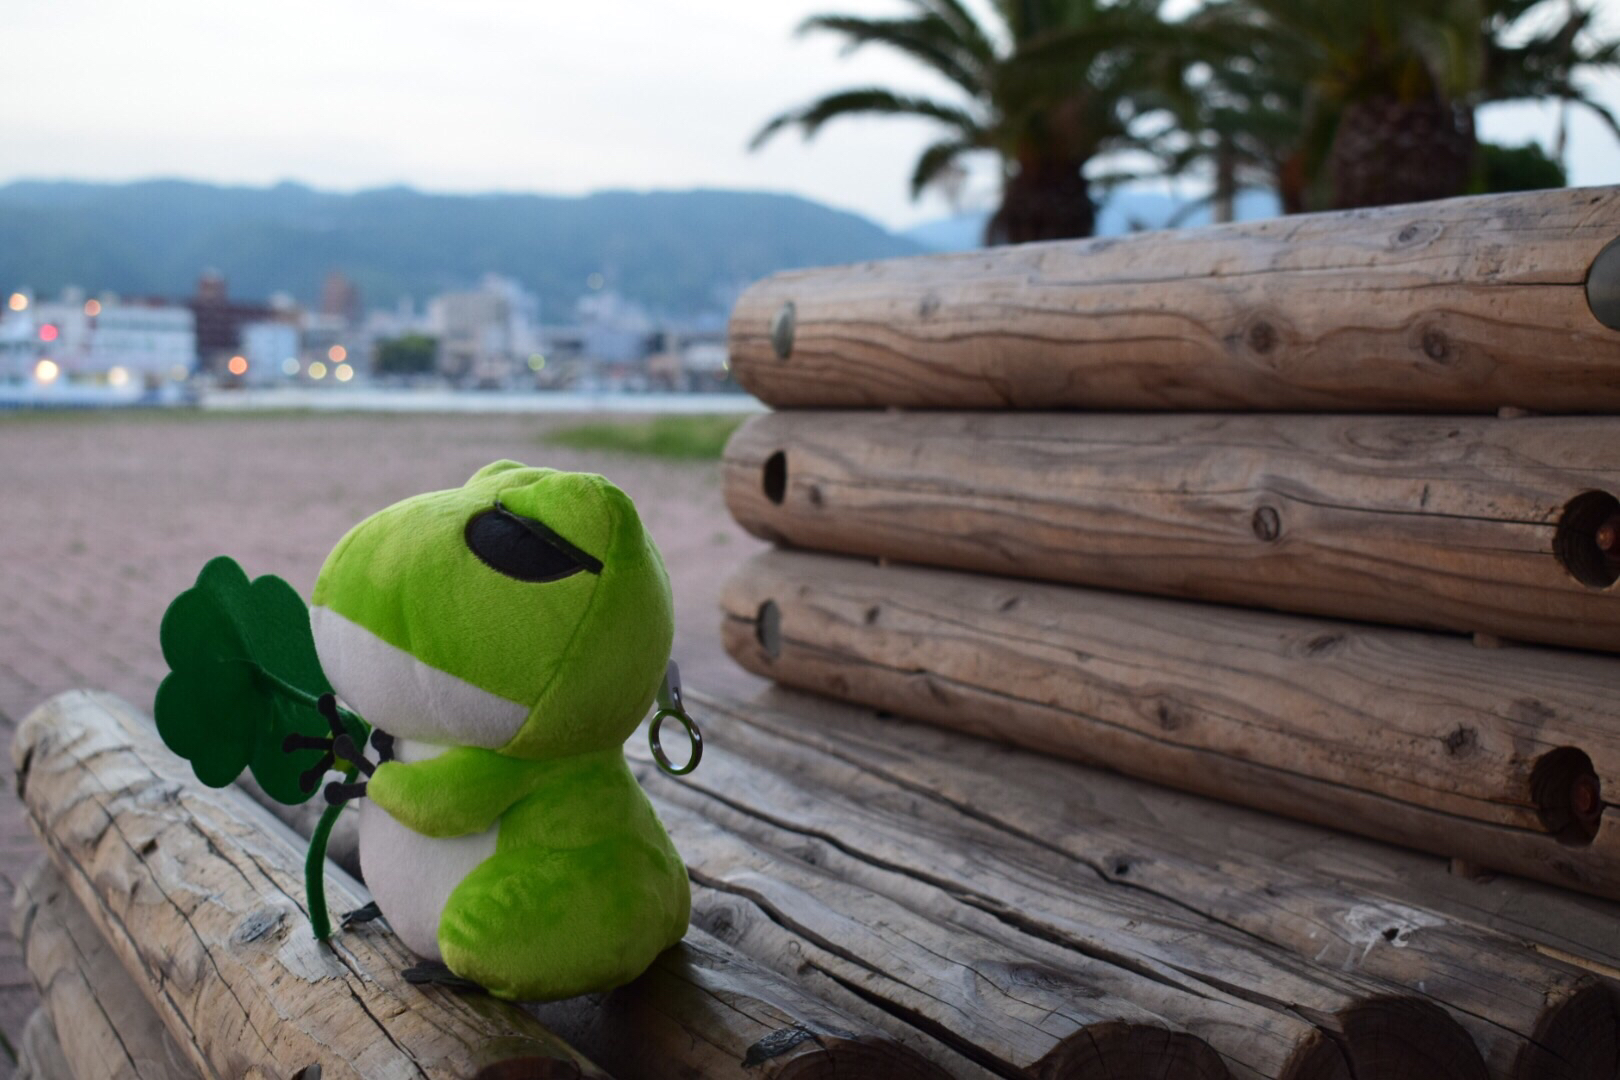 ＃旅行青蛙＃,青蛙旅行🐸️🐸️,旅行青蛙＃,#旅行青蛙,旅行